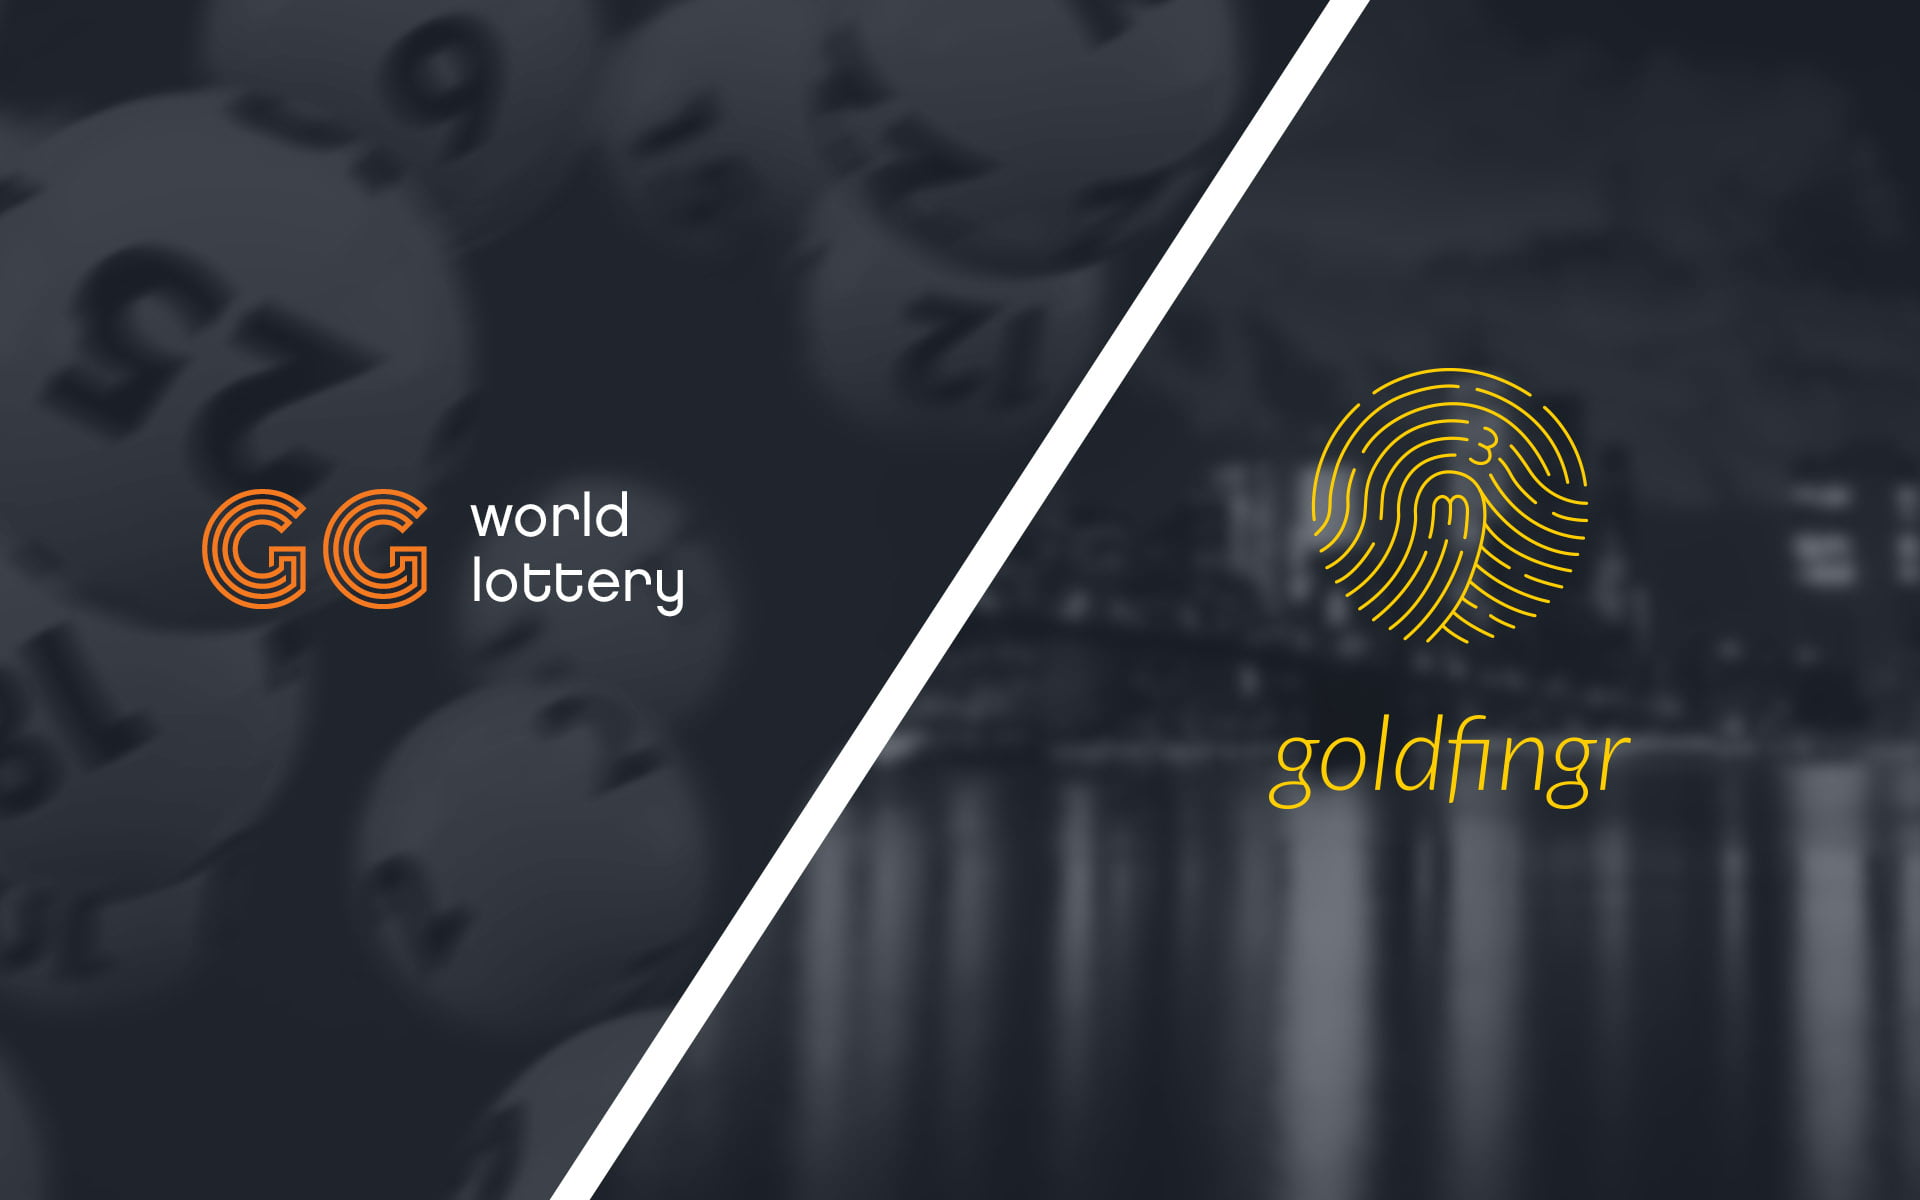 GG World, Goldfingr